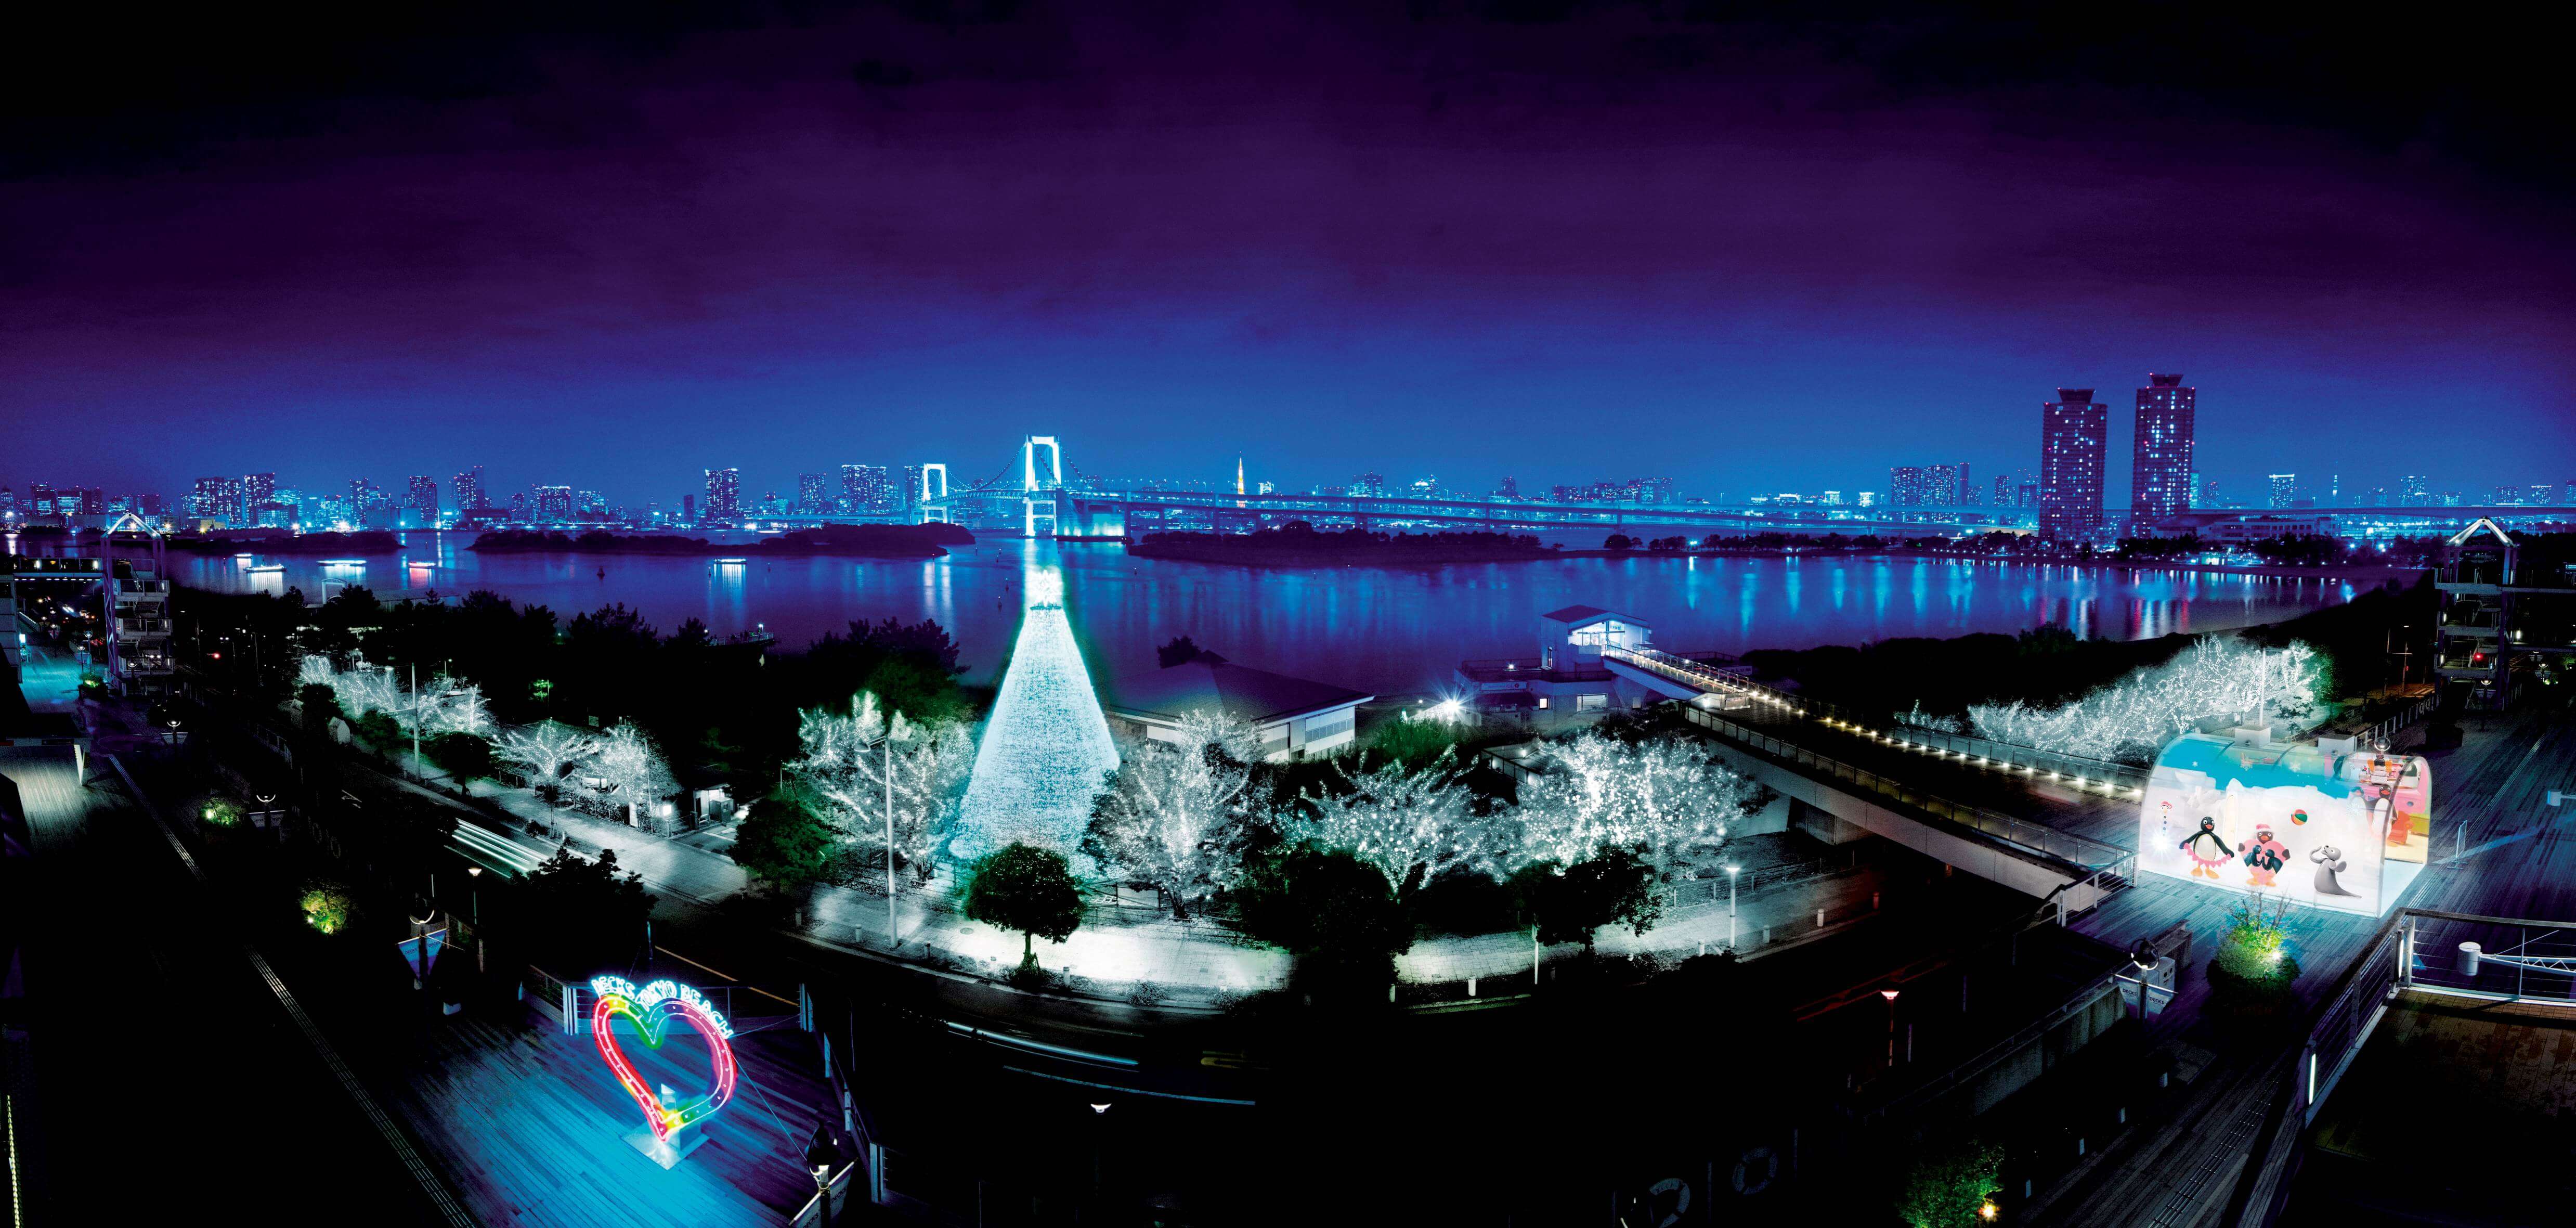 イルミネーションアイランドお台場2018 Illumination Island Odaiba 燈飾 デックス東京ビーチ